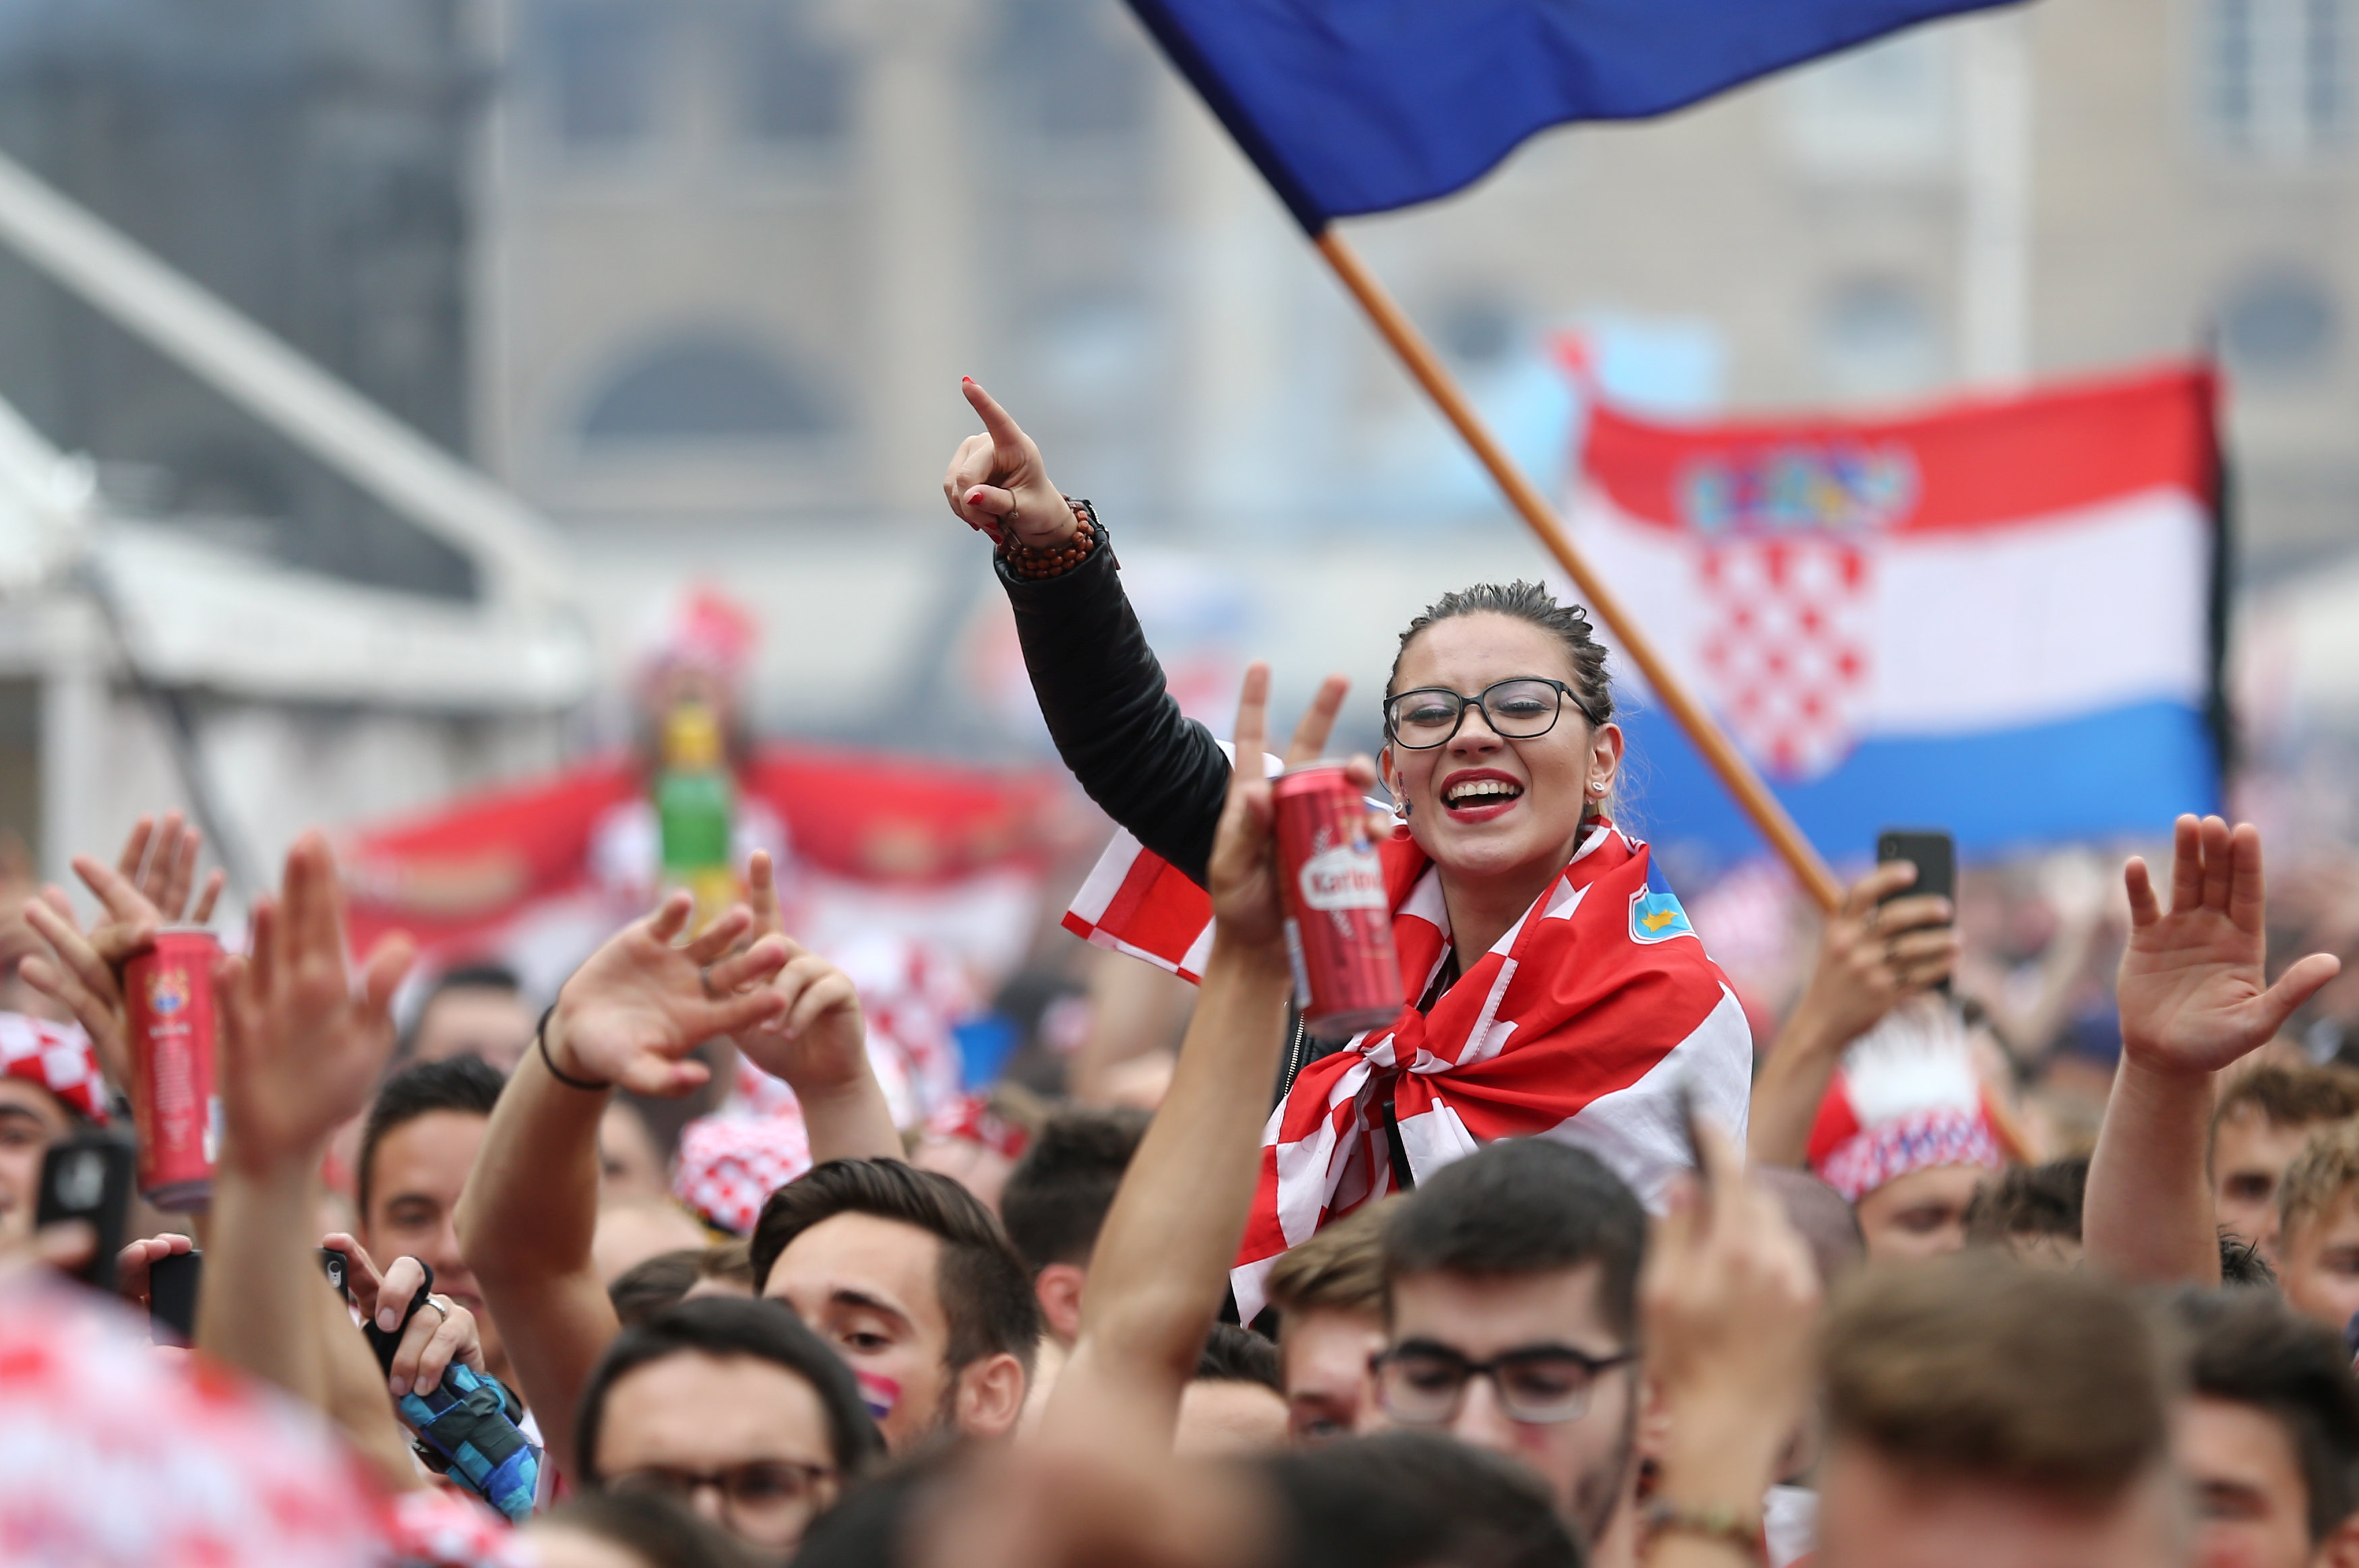 Франция - Хорватия 4:2. Команда Дешама победила на ЧМ-2018 и выиграла второй Кубок Мира. Видео голов, фото